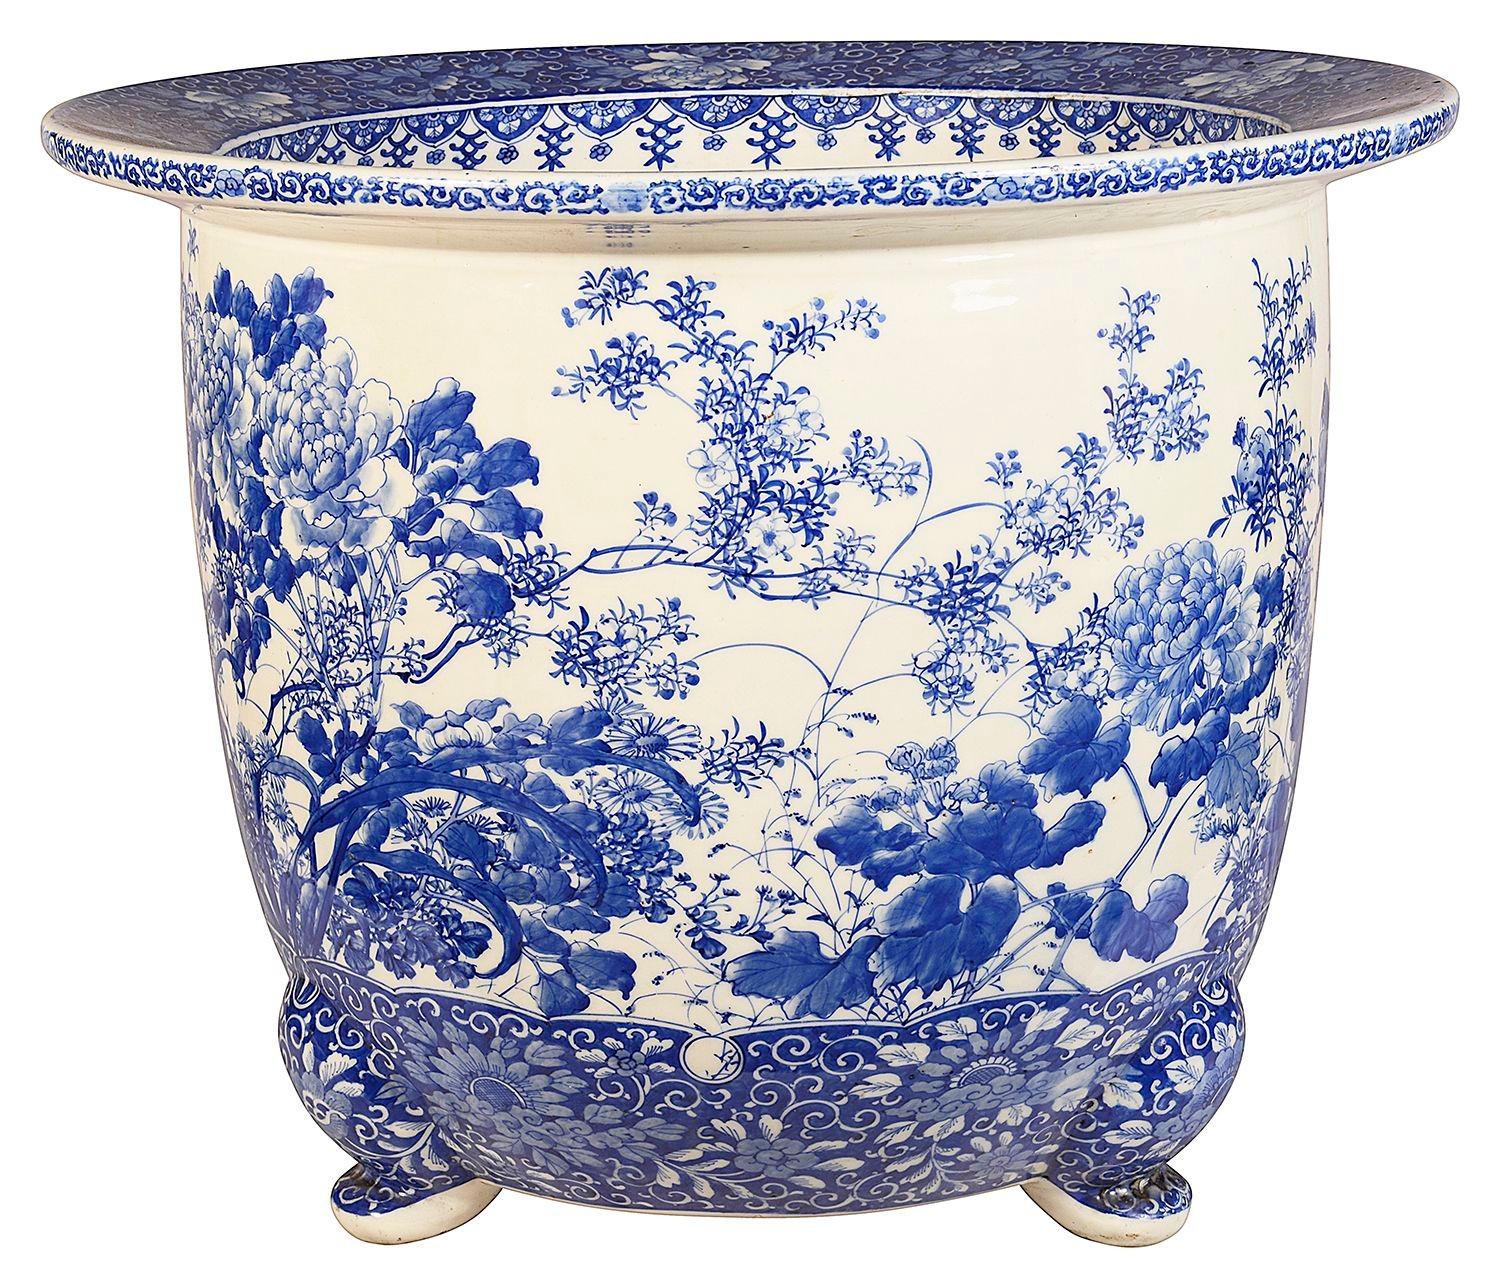 Grande jardinière japonaise en porcelaine bleue et blanche, ornée de magnifiques motifs traditionnels sur le dessus et le dessous. Avec des fleurs exotiques et du feuillage peints à la main. Elle repose sur trois pieds à enroulement. Période Meiji